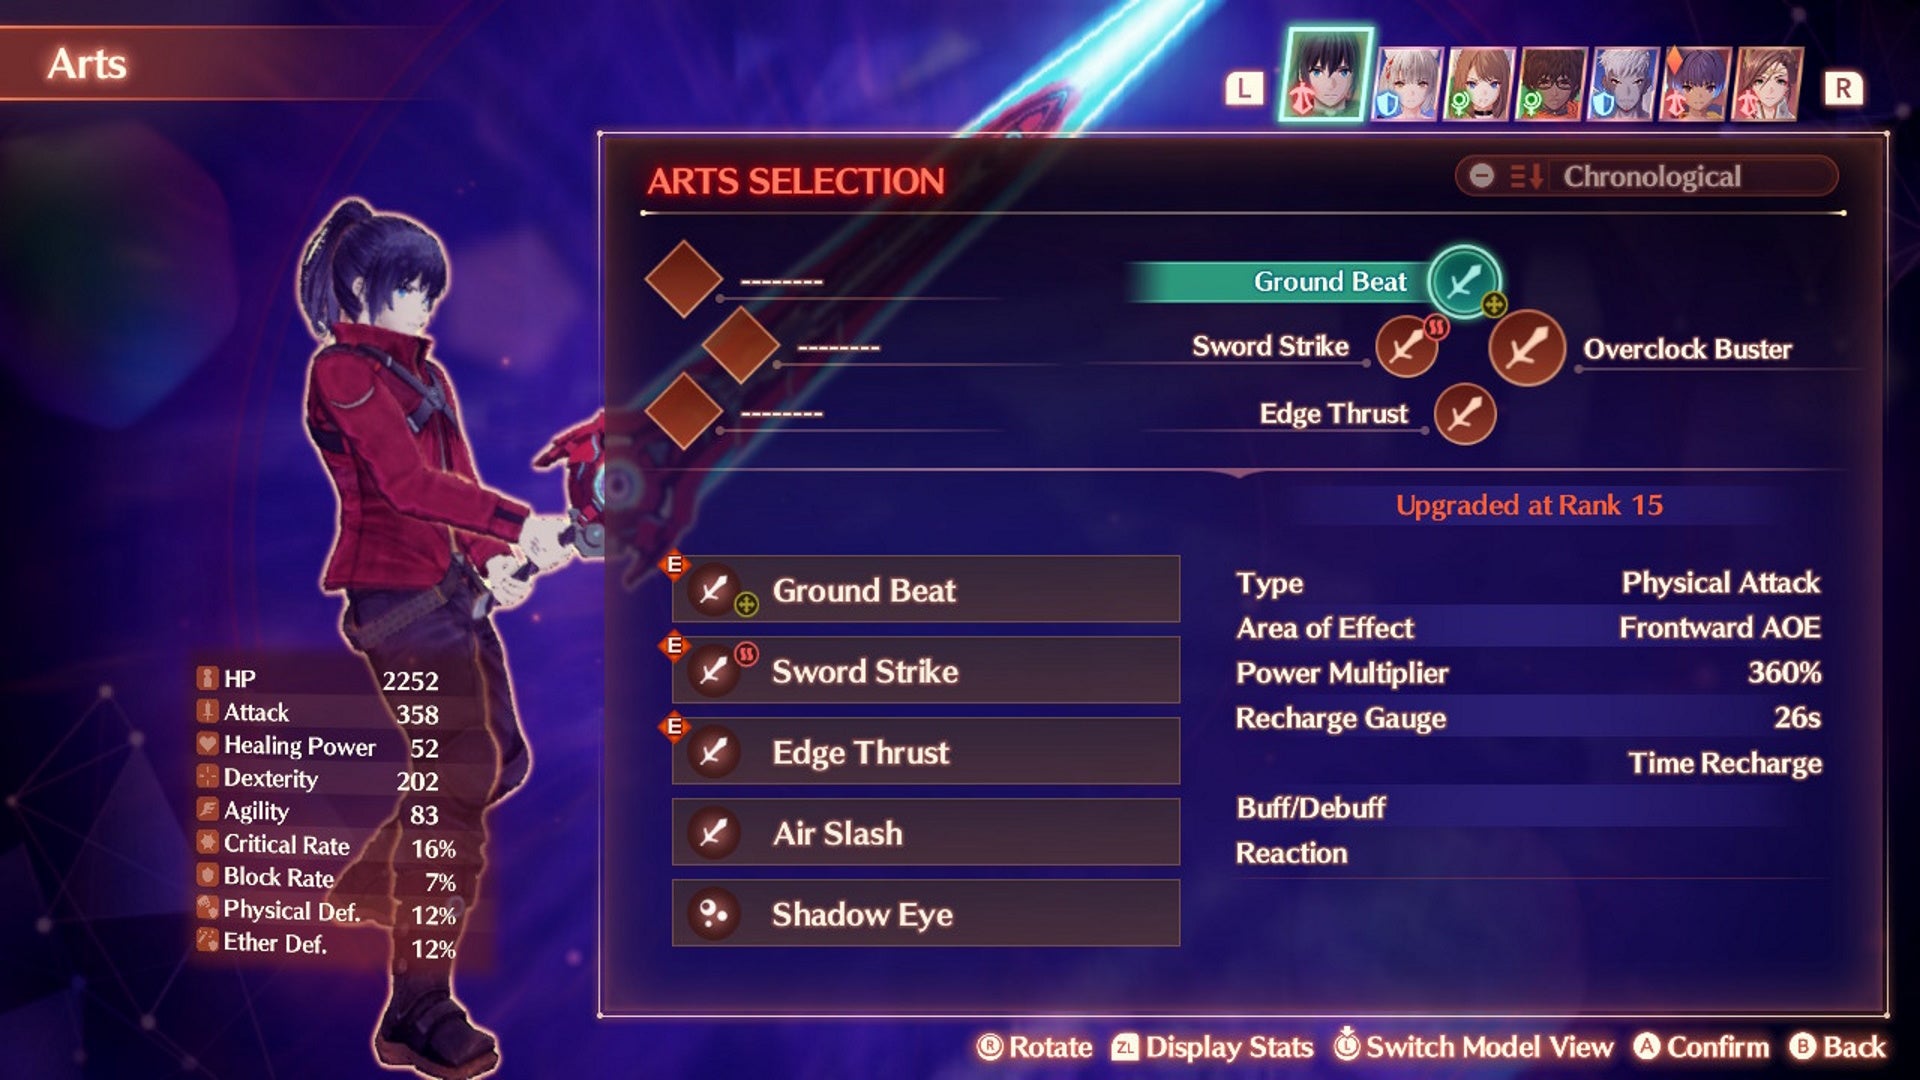 Xenoblade Chronicles 3 Swordfighter art selection screen